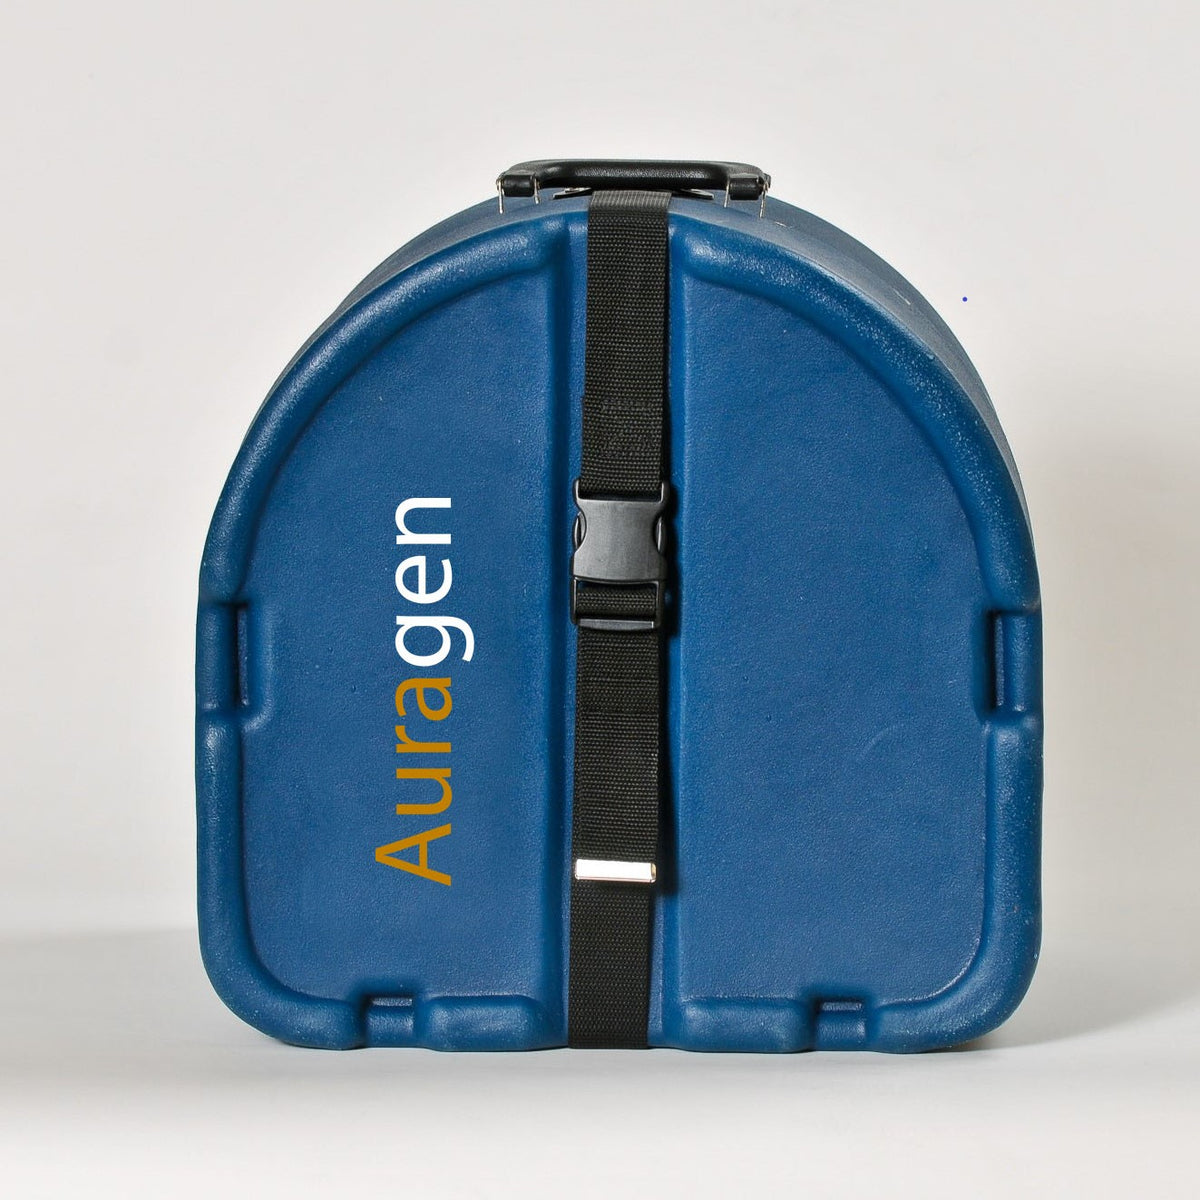 Auragen™ Travel Cases